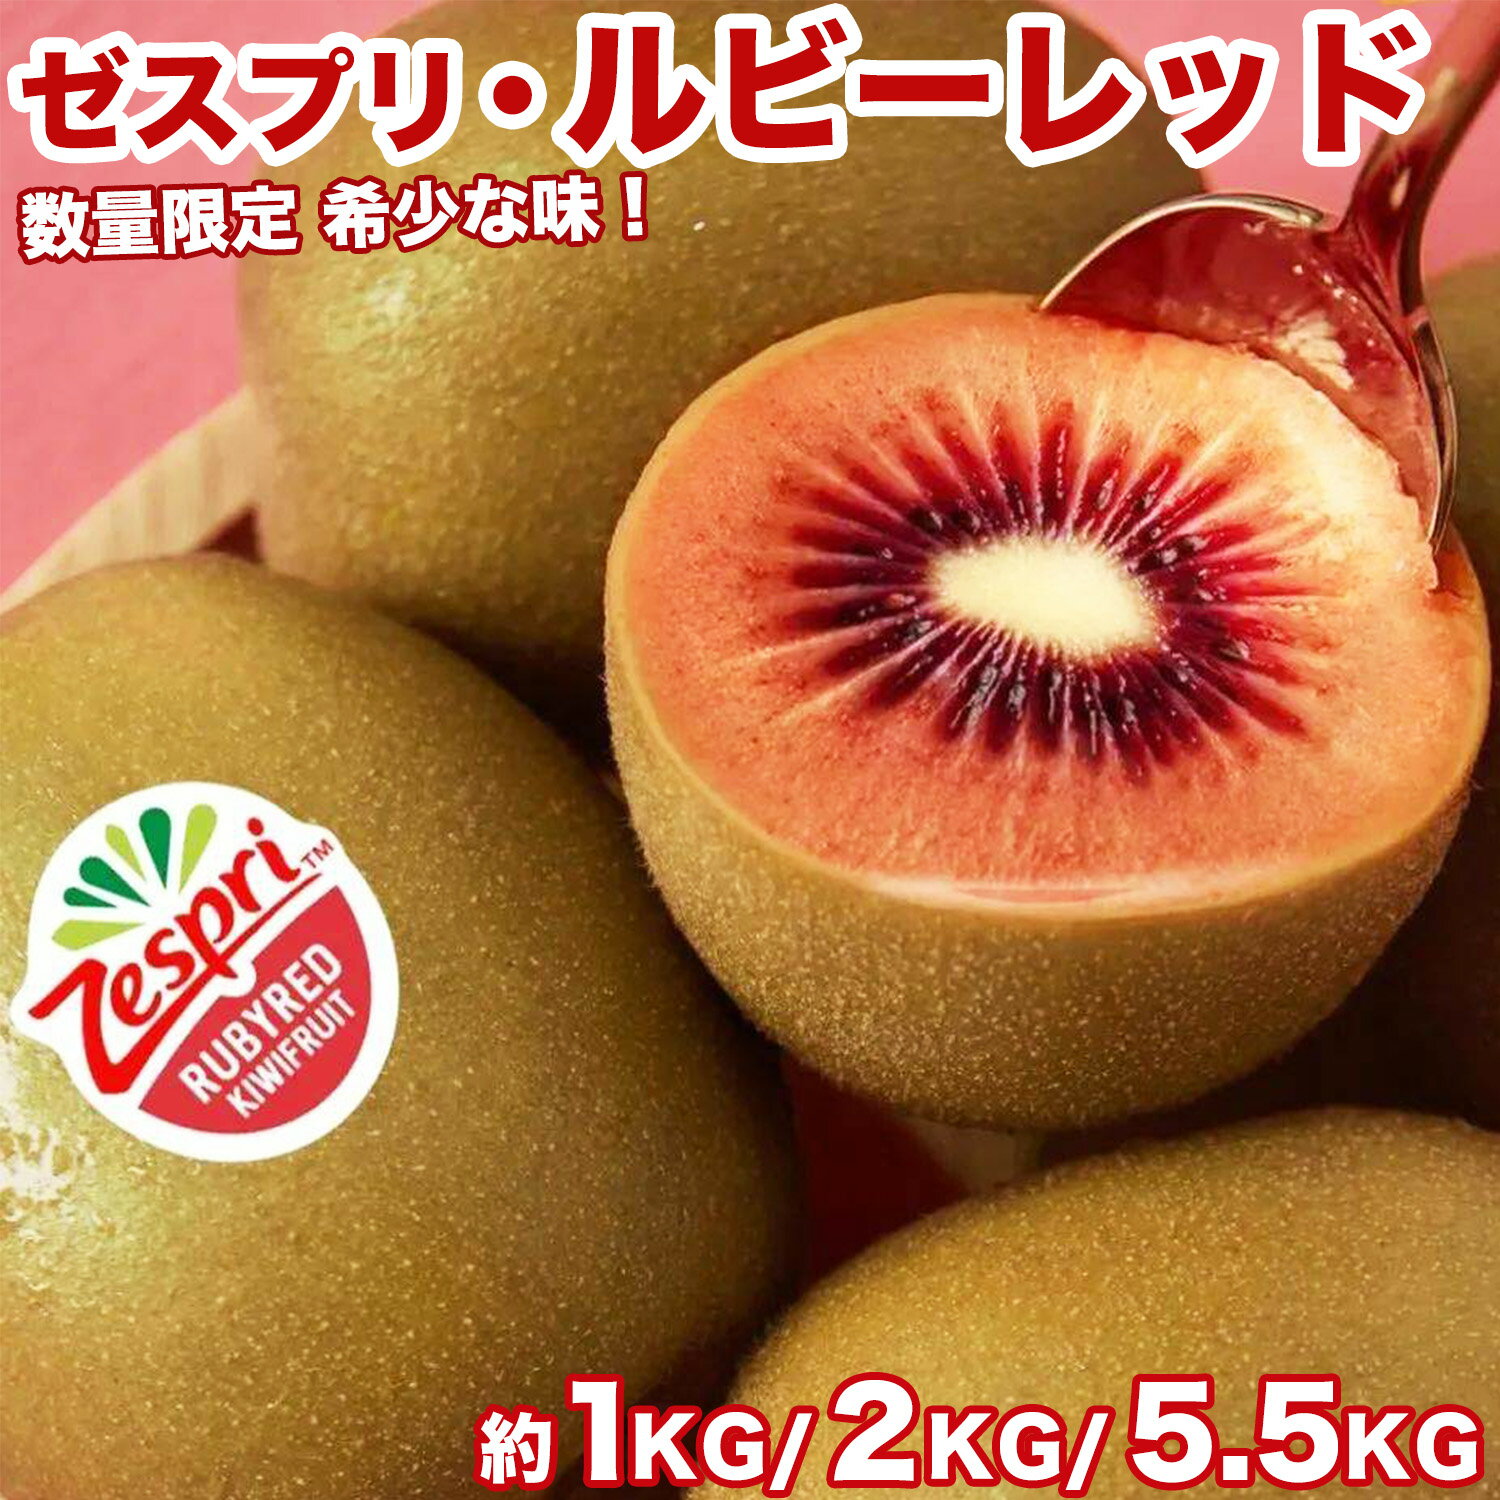 商品情報商品名ゼスプリ・ルビーレッドZespri RubyRed Kiwifruit内容量約1kg / 10〜16玉前後（無地箱）約2kg / 22〜30玉前後（無地箱）約5.5kg / 60〜80玉前後（産地箱）保存方法キウイは、通常は常温保存で追熟させます。食べごろが来たら冷蔵庫で2~3時間程度冷やして食べるとよいでしょう。熟す前に冷蔵庫に入れてしまうと、低温障害をうけ、追熟しなくなりますので、冷蔵庫で保存するのは、熟してからにしてください。※常温で保存し食べる2、3時間前に冷蔵することをおすすめです。産地ニュージーランド産配送方法ヤマト運輸にてクール便／常温便発送（気温によって配送方法変更致します。）送料■本商品は【送料無料】となります。※但し、【沖縄および一部離島】へのお届けの場合は、別途送料をご案内致します。上記、【沖縄・一部離島】へのお住まいのお客様へはご注文時と、ご注文後すぐに配信されます「自動配信受注確認メール」に記載しております請求金額が異なります。該当地域にお住まいのお客様に関しましては、弊社からの受注確認メールにて料金を追加いたしております。その説明につきましても受注確認メール内にて記載いたしております。ご確認のほどお願い申し上げます。お届け日の目安&gt; ◆ 通常商品の場合 ◆ ご注文受付後、即日〜5営業日の出荷となります。入荷状況によってはお待ちいただくこともございます。 なお、ご注文のタイミングによっては即日の発送となる場合もございますので、ご都合の悪いお日にち等ございましたら、ご注文の際、【ご要望欄】にお書き頂きますようお願い申し上げます。 ご希望のお届け日がある場合は【ご要望欄】にその旨ご記入ください。 ※なるべく前もってのご注文をおすすめ致します。 入荷状況によってはご要望にお応えできない場合もございます。その際は早めにご連絡させていただきます。 ◆ 予約商品の場合 ◆ ※ 商品名に【予約】と記載されている商品が予約商品となります。 入荷開始後及び、入荷次第の発送となります。 現在まだ入荷が開始されていない商品につきましては商品タイトルに記載しております時期を目安にお考え下さい。天候・入荷状況によってはお届け時期が大幅に前後する場合がございます。 また、予約商品についてはお届け日のご指定は不可となっております。 帰省や旅行等で、ご不在でお受け取りが出来ないお日にちがある場合は、ご注文の際にご都合の悪いお日にちを【ご要望欄】にご記入ください。 ご予定が変わった場合もその都度ご連絡いただければ、出来るだけ対応させていただきます。 ◆出荷から到着の目安◆・関東、関西、北陸、東海、東北、信越：発送後、翌日着予定・中国、四国、九州、北海道：発送後、翌々日着予定・沖縄、一部離島地域：発送後、2〜3日後着予定※交通状況により、お届けに遅延が発生する場合もございます。予め、ご了承のほどよろしくお願いいたします。お支払い方法■クレジットカード（手数料無料）■銀行振込（前払入金／手数料：お客様にご負担いただきます。）■代金引換（手数料：全国一律料金： 330円）■セブンイレブン決済、ローソン、郵便局ATM等(前払)（手数料無料）■Alipay / Apple Pay（手数料無料）■後払い決済（手数料：250円）領収書・納品書の自動発行について ※納品書・商品明細の発行及び同梱は行っておりません。領収書について、商品発送完了後、当店より「商品発送完了メール」内に領収書の発行リンクがございますので、ぜひご活用してください。＜ゼスプリ＞ルビーレッド キウイフルーツ 1/2/5.5キロ 箱 ニュージーランド産 上品な甘さで希少な味 小ぶりな貴重品種 赤キウイ 日本向け 数量限定 Zespri RubyRed Kiwi 四季の広場厳選 旬の果物 くだもの 紅奇異果 家庭用 贈答用 果物ギフト ＜国内検品＞＜春限定＞ 【楽天ランキング1位受賞】今が旬！貴重品種〜宝石のような熟したベリーのような上品な甘さと、ジューシーな果汁が口の中にあふれます 春限定！珍しく数量と期間限定の希少な味〜新品種「ルビーレッド」登場！ ゼスプリが20年以上の歳月をかけて開発した、新しいキウイフルーツ、ゼスプリ・ルビーレッド。販売期間は4月上旬〜5月上旬だけ。宝石のような赤い果肉は、ただ美しいだけではありません。熟したベリーのような上品な甘さと、ジューシーな果汁が口の中にあふれます。ゼスプリでは、生活者の嗜好にあわせて、キウイフルーツの品種改良に取り組んでいます。特に、このルビーレッドは20年以上の歳月をかけて生まれた、栽培の難しい、貴重で小ぶりな品種です。当店は仕入れから検品・出荷まで、一貫して行っておりますので、多段階の流通ルートを通さなく、鮮度が良いのキウイをお求めやすい価格でご提供させていただきます。4月から5月上中旬まで約1ヶ月間、春限定でルビーレッドをお届けいたします！日本国内の入荷数が結構少ないため、数が限られていますので、年に春の1ヶ月限定入荷なので、この機会をお見逃しなく！ 期間限定の希少な味！販売期間は4月〜5月上中旬まで 1個で一日に必要なビタミンCを取ることが出来ます 上品な甘さと、ジューシーな果汁が口の中にあふれます ニュージーランド農園から販売まで厳格に品質管理！ 甘味が強く、果肉は綺麗な赤色、贈り物にピッタリ！ キウイはご自宅で追熟させることはできます ニュージーランドとゼスプリの独自の厳しい基準で栽培、輸出されたゼスプリキウイは常に日本の基準を満たしています。ニュージーランドで収穫されたキウイのうち、日本に届くゼスプリのキウイは、厳しい糖度の基準をクリアしています。船上から出荷まで独自の追熟管理を行い、届いたタイミングで食べごろになるよう調節しています。食べ頃についてキウイは収穫直後は硬く、酸っぱいですが時間の経過で柔らかく、甘く熟していきます。常温で、バナナやリンゴなどエチレンガスを放出する果物と一緒にビニール袋に入れておくと急速に熟していきます。衝撃でも熟しますが、熟す場所が偏るのでおすすめしません。反対に、冷蔵庫に保存しておけばゆっくりと熟していきます。一般的にはさわって少し柔らかいと感じるくらいが食べ頃です。個体差がありますので、柔らかい物からお召し上がりください。ゼスプリ・サンゴールドキウイに含まれるビタミンCは152mg。なんと1日に必要なビタミンCを1個でとることができます。ビタミンCは、体の中に貯めておけず、加熱すると壊れてしまうので、毎日、新鮮な果物や野菜からとる必要があります。キウイフルーツは生で食べられるから、効率よくビタミンCを摂取できます。*ゼスプリ インターナショナル調べ可食部100gあたり152mg含有。キウイはサイズにもよるが1個 約100g。 発送時期の目安はタイトルまたは商品項目に記載1